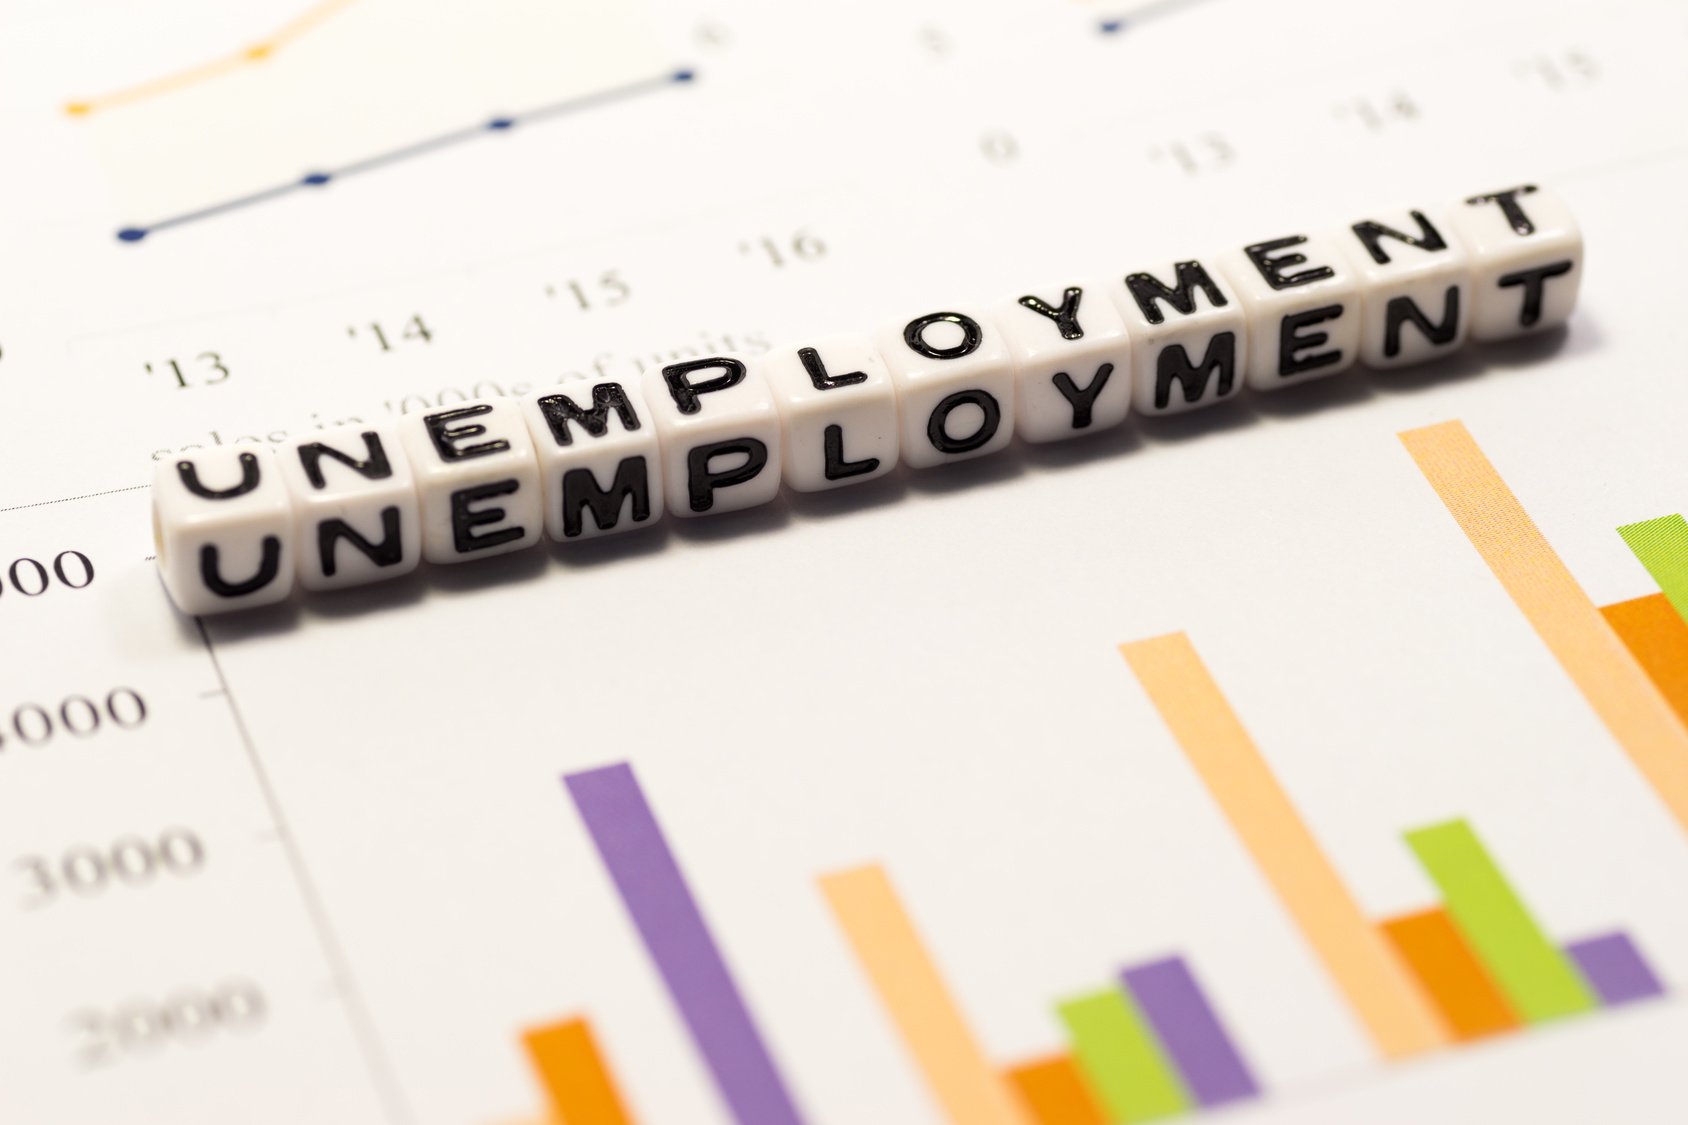 ΔΥΠΑ: Μειώθηκαν οι εγγεγραμμένοι άνεργοι τον Σεπτέμβριο σε σχέση με τον προηγούμενο μήνα